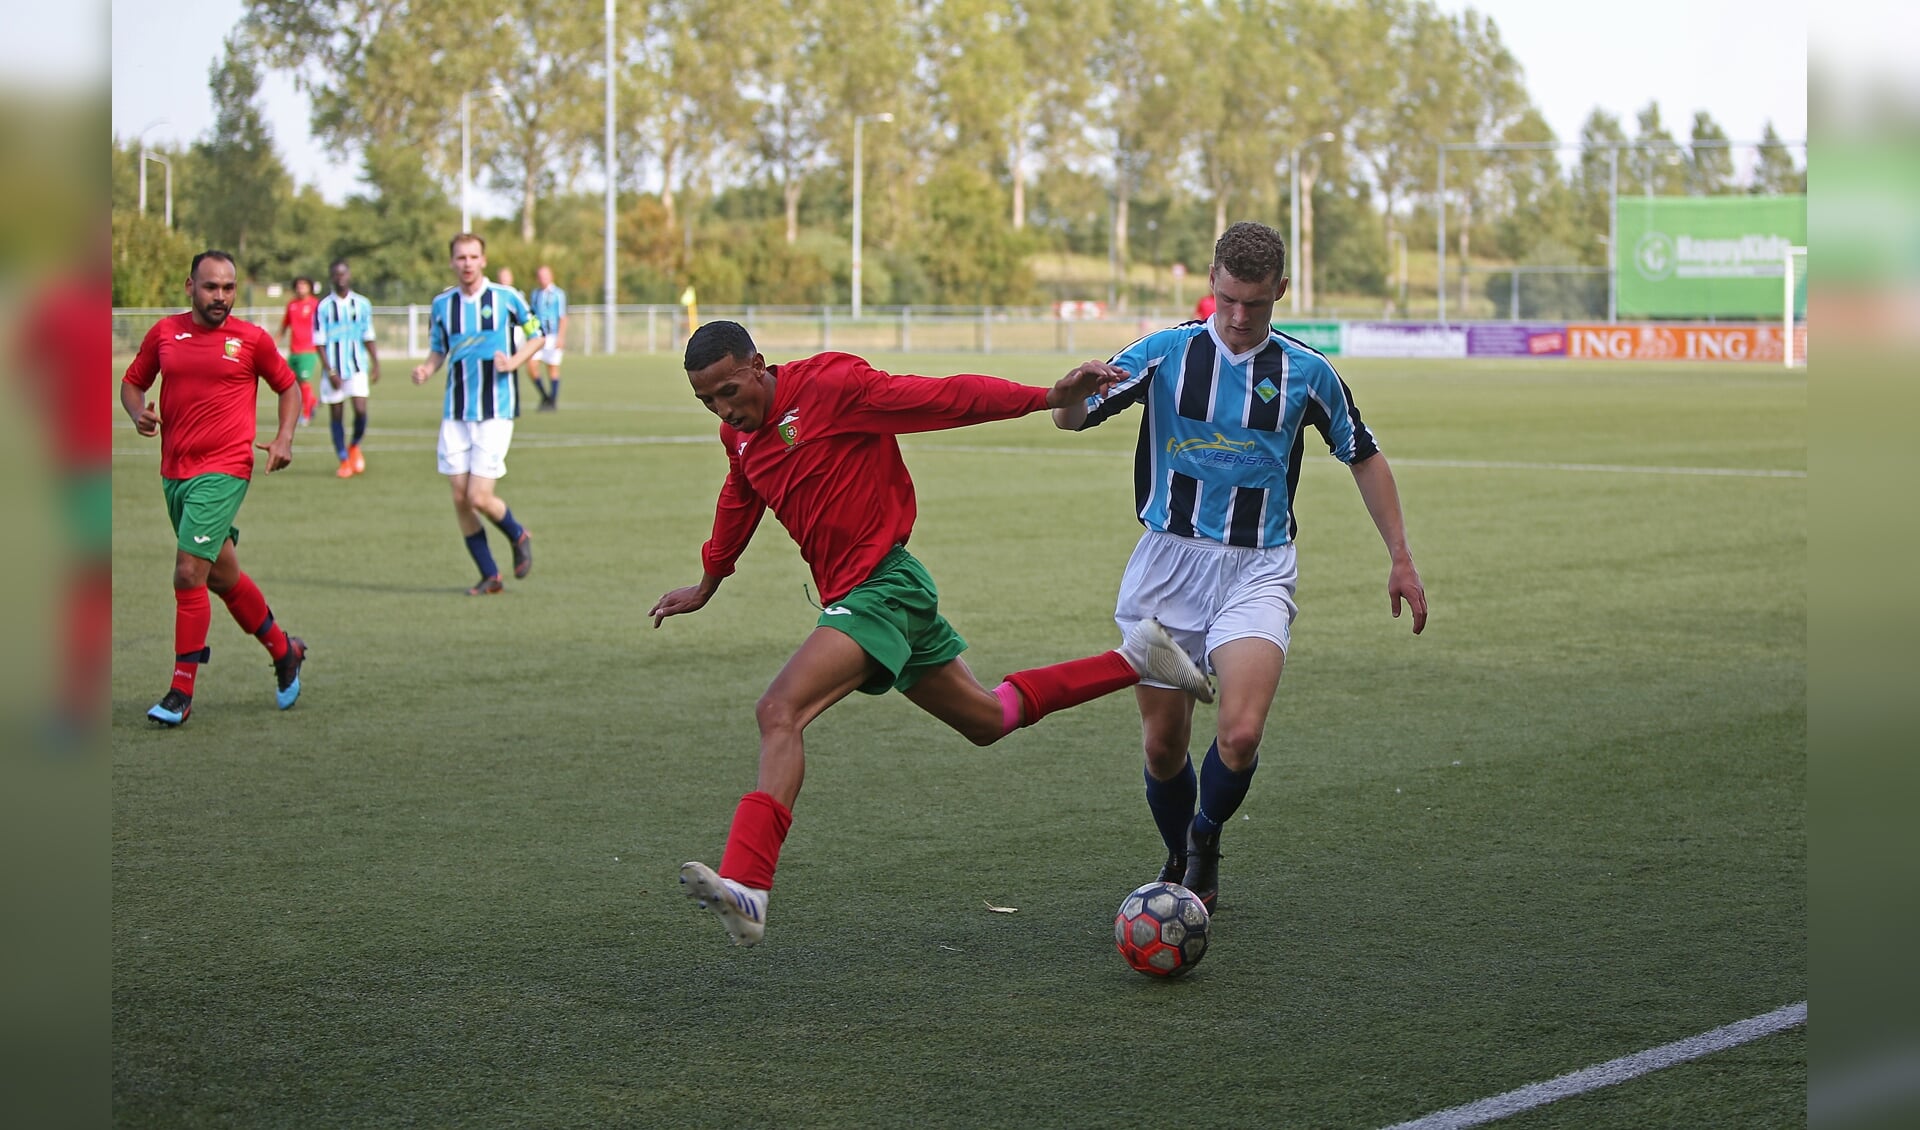 UNO en FC Portugaal zijn aan elkaar gewaagd wat een aantrekkelijke wedstrijd oplevert. 